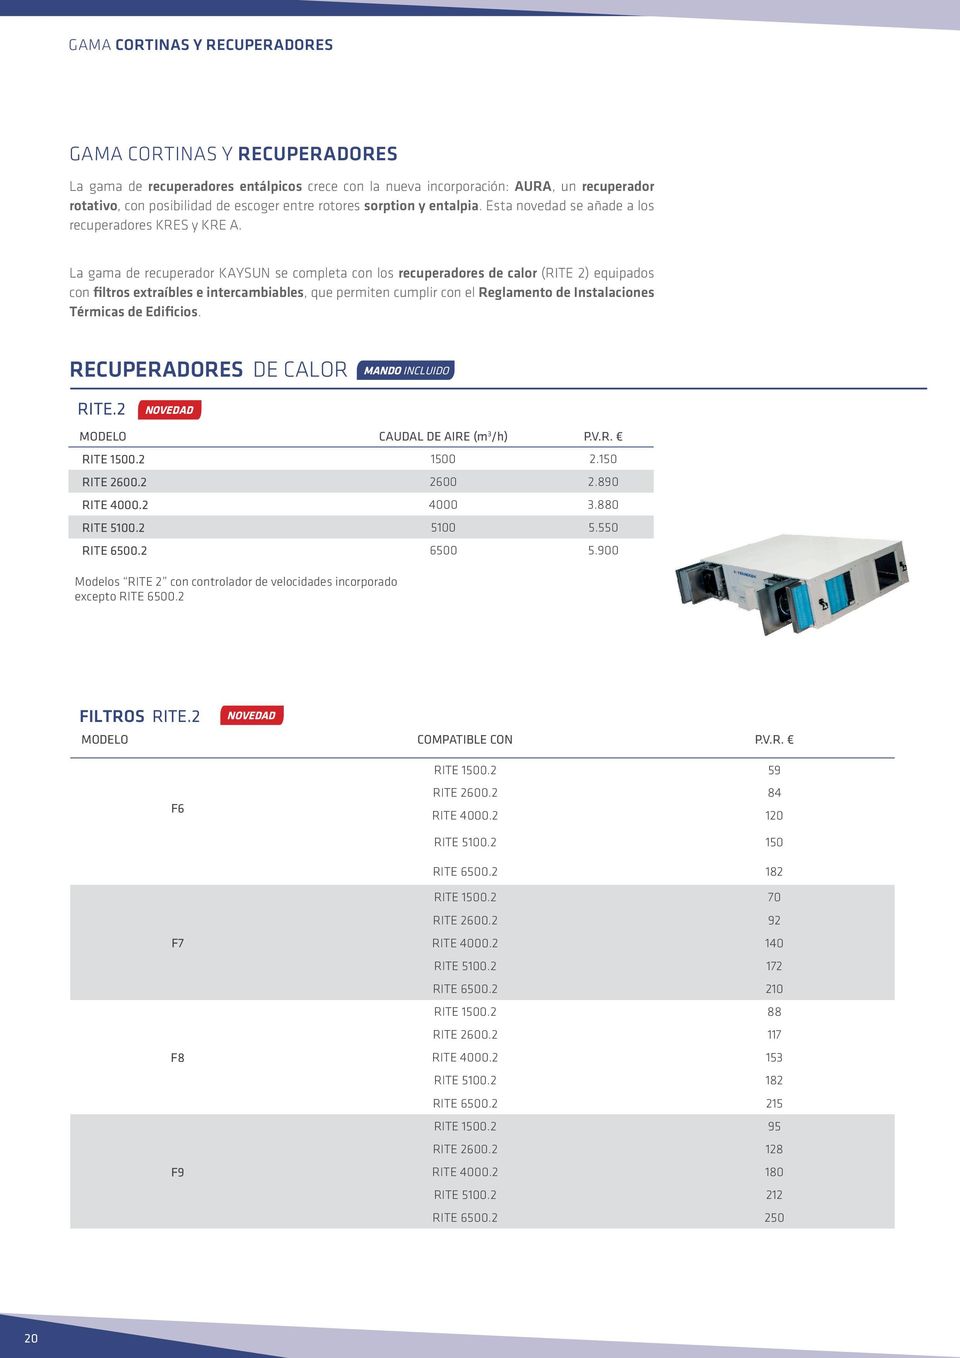 La gama de recuperador KAYSUN se completa con los recuperadores de calor (RITE 2) equipados con filtros extraíbles e intercambiables, que permiten cumplir con el Reglamento de Instalaciones Térmicas